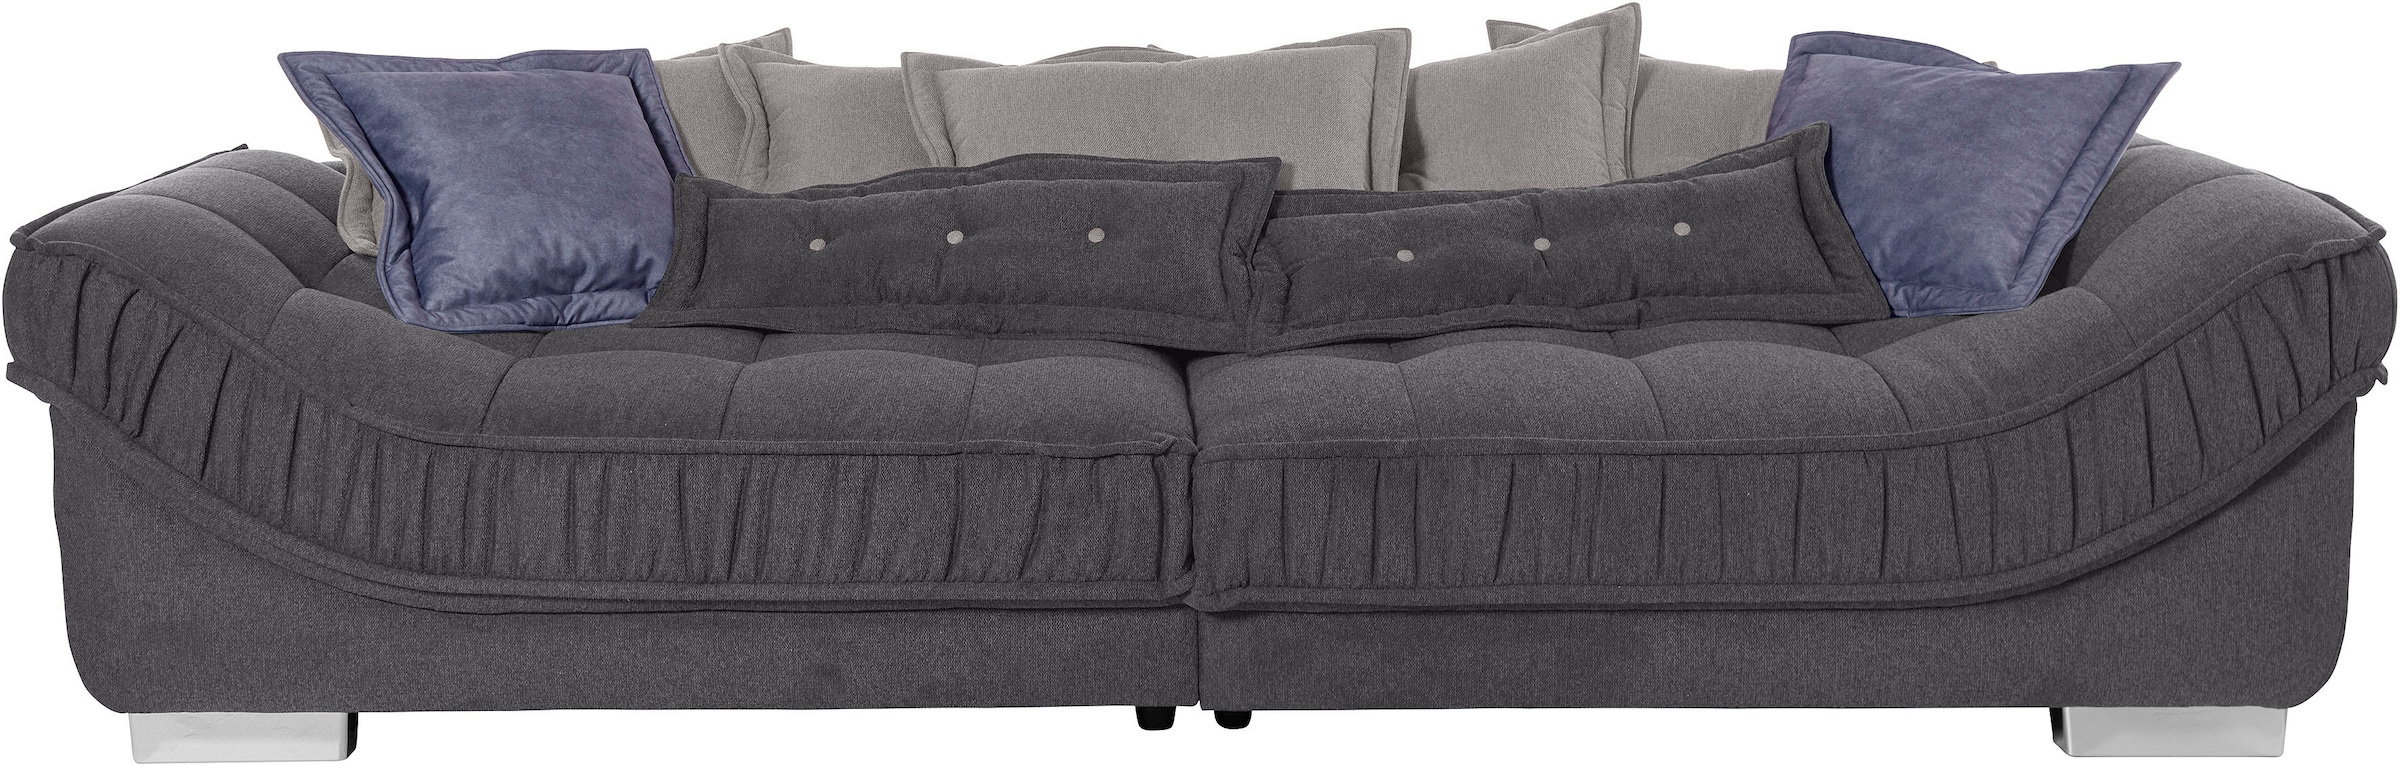 Big-Sofa »Diwan«, hochwertige Polsterung für bis zu 140 kg Belastbarkeit pro Sitzfläche